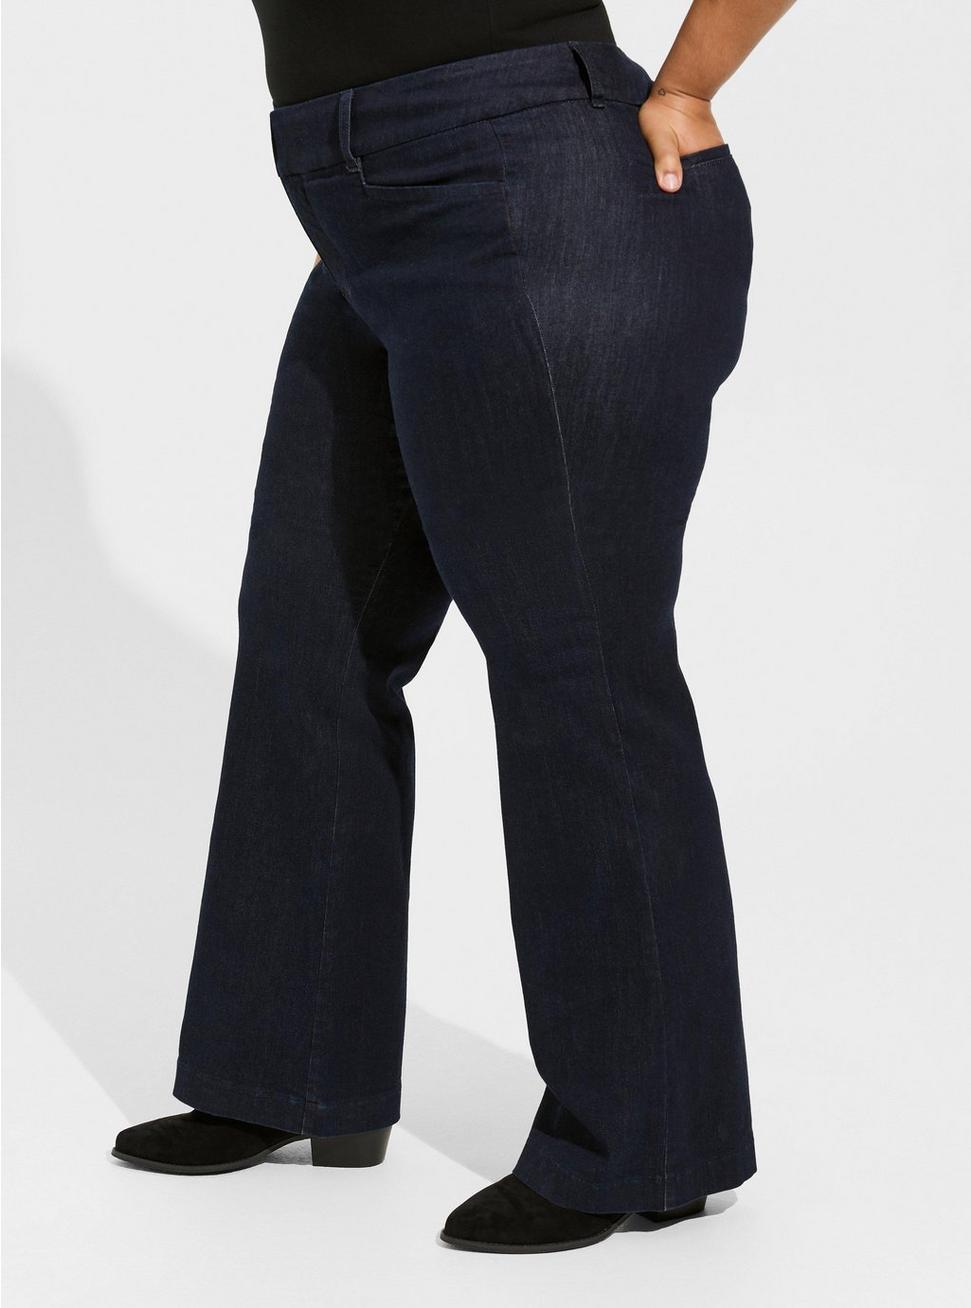 Comfort Flex Taper Super Soft High Rise Trouser Jean, OZONE, alternate